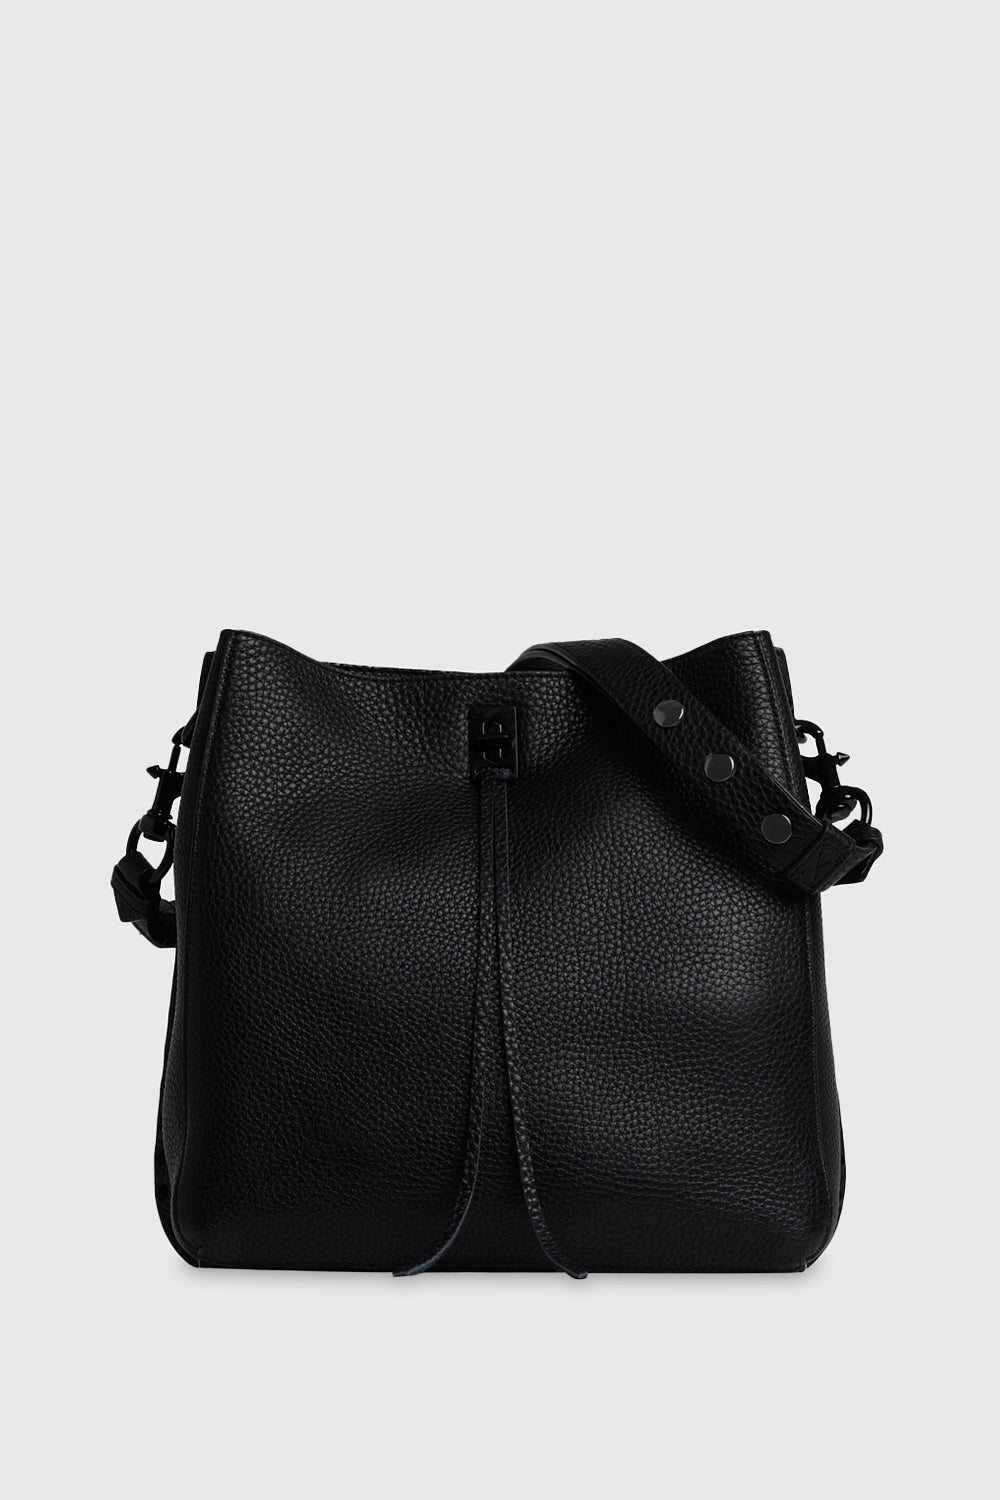 Rebecca Minkoff Darren Leather Shoulder Bag - Black